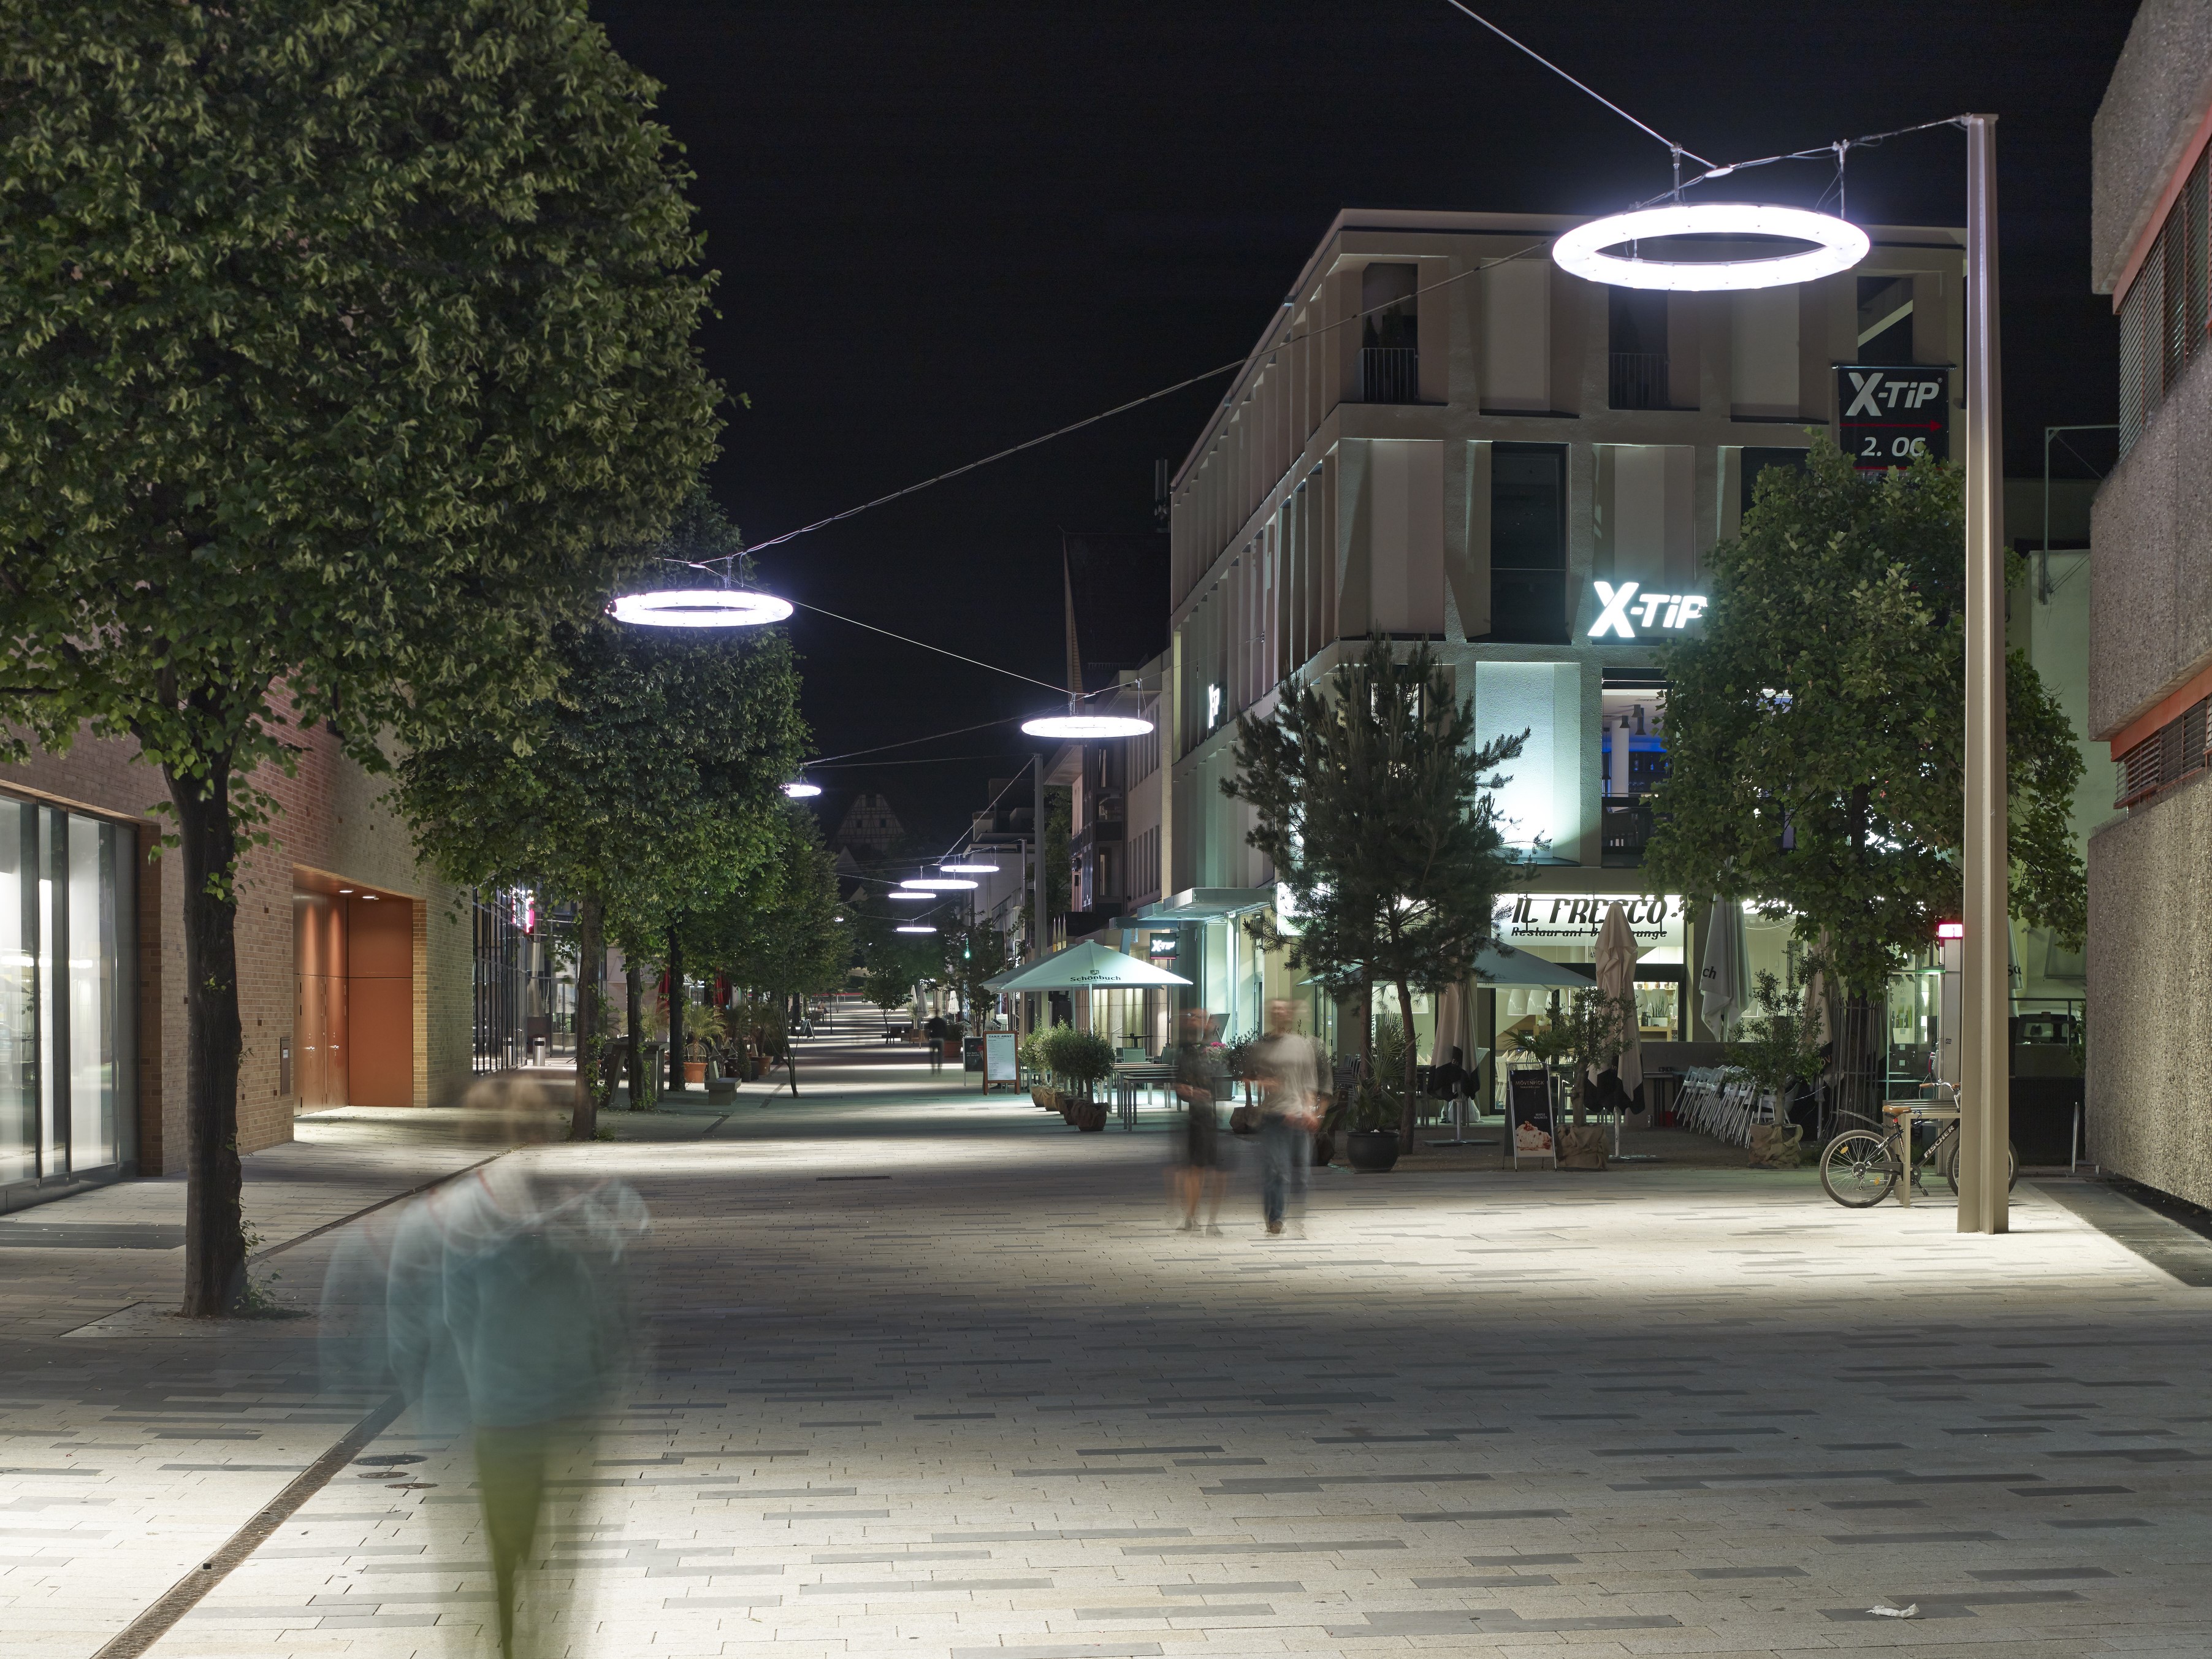 Blick bei Dunkelheit in die Fußgängerzone "Neue Meile" in Böblingen: Diese wird von radförmigen Straßenleuchten erhellt, die an Seilen über der Fußgängerzone hängen.